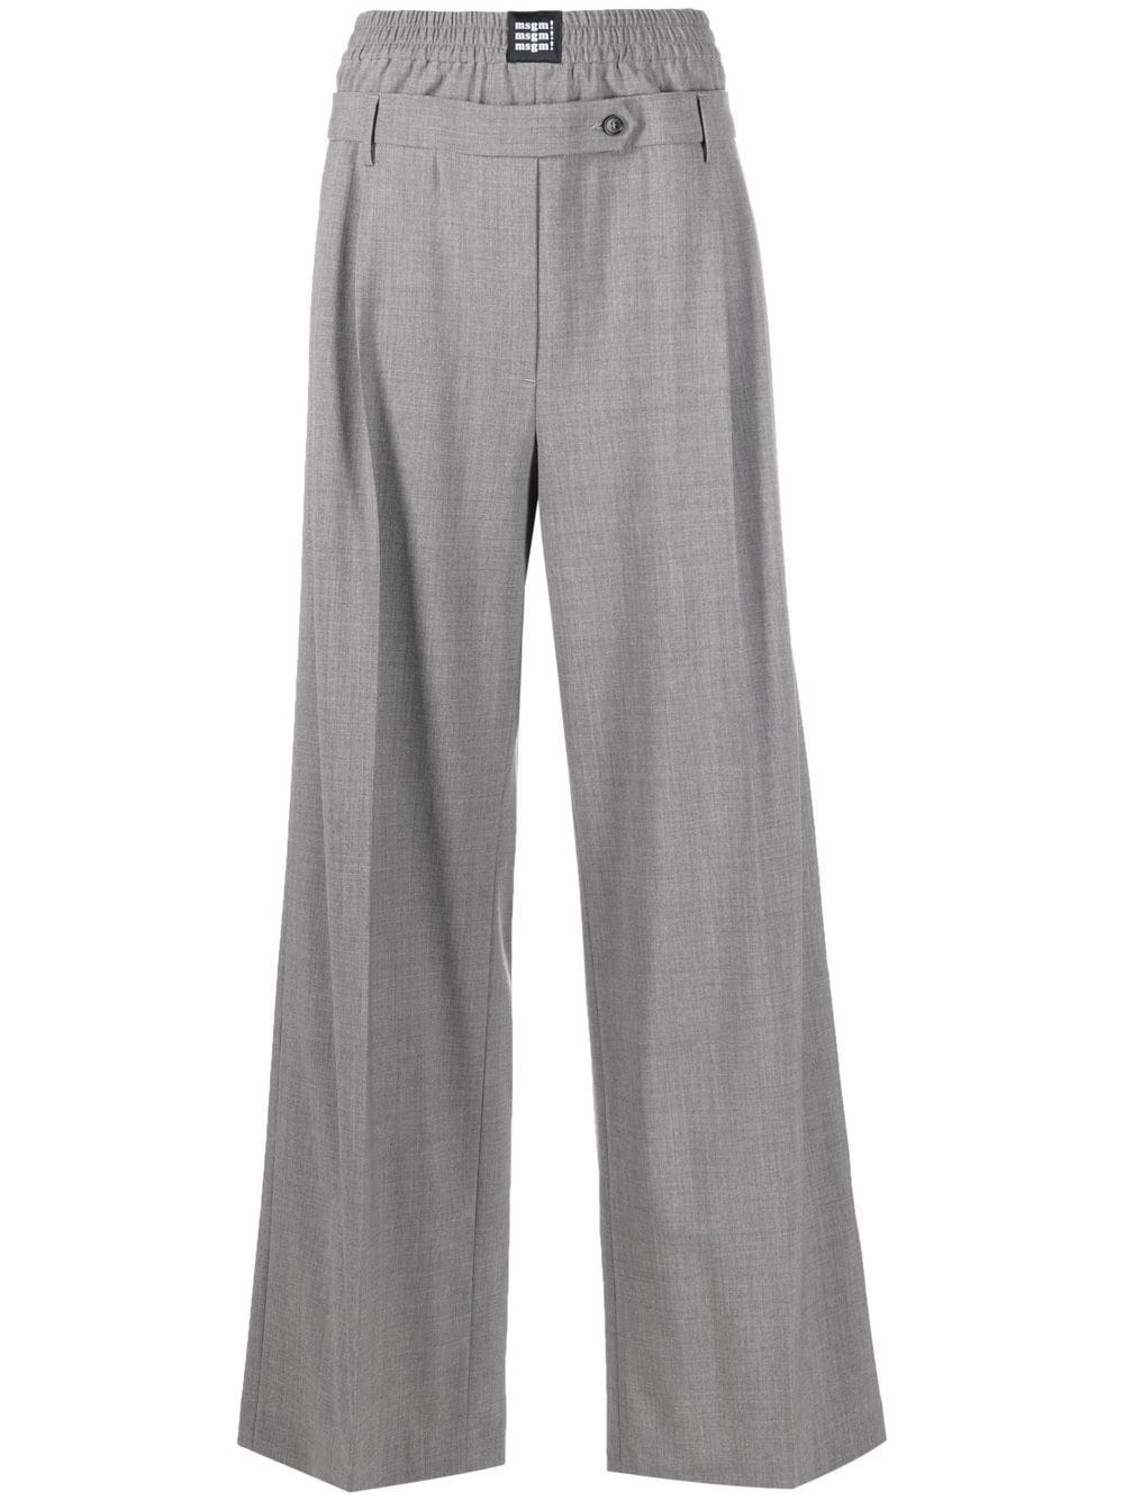 shop MSGM  Pantaloni: Pantaloni MSGM, vita alta, elastico in vita, doppia vita, gamba ampia, tasche laterali, in fresco lana.

Composizione: 100% lana. number 2490